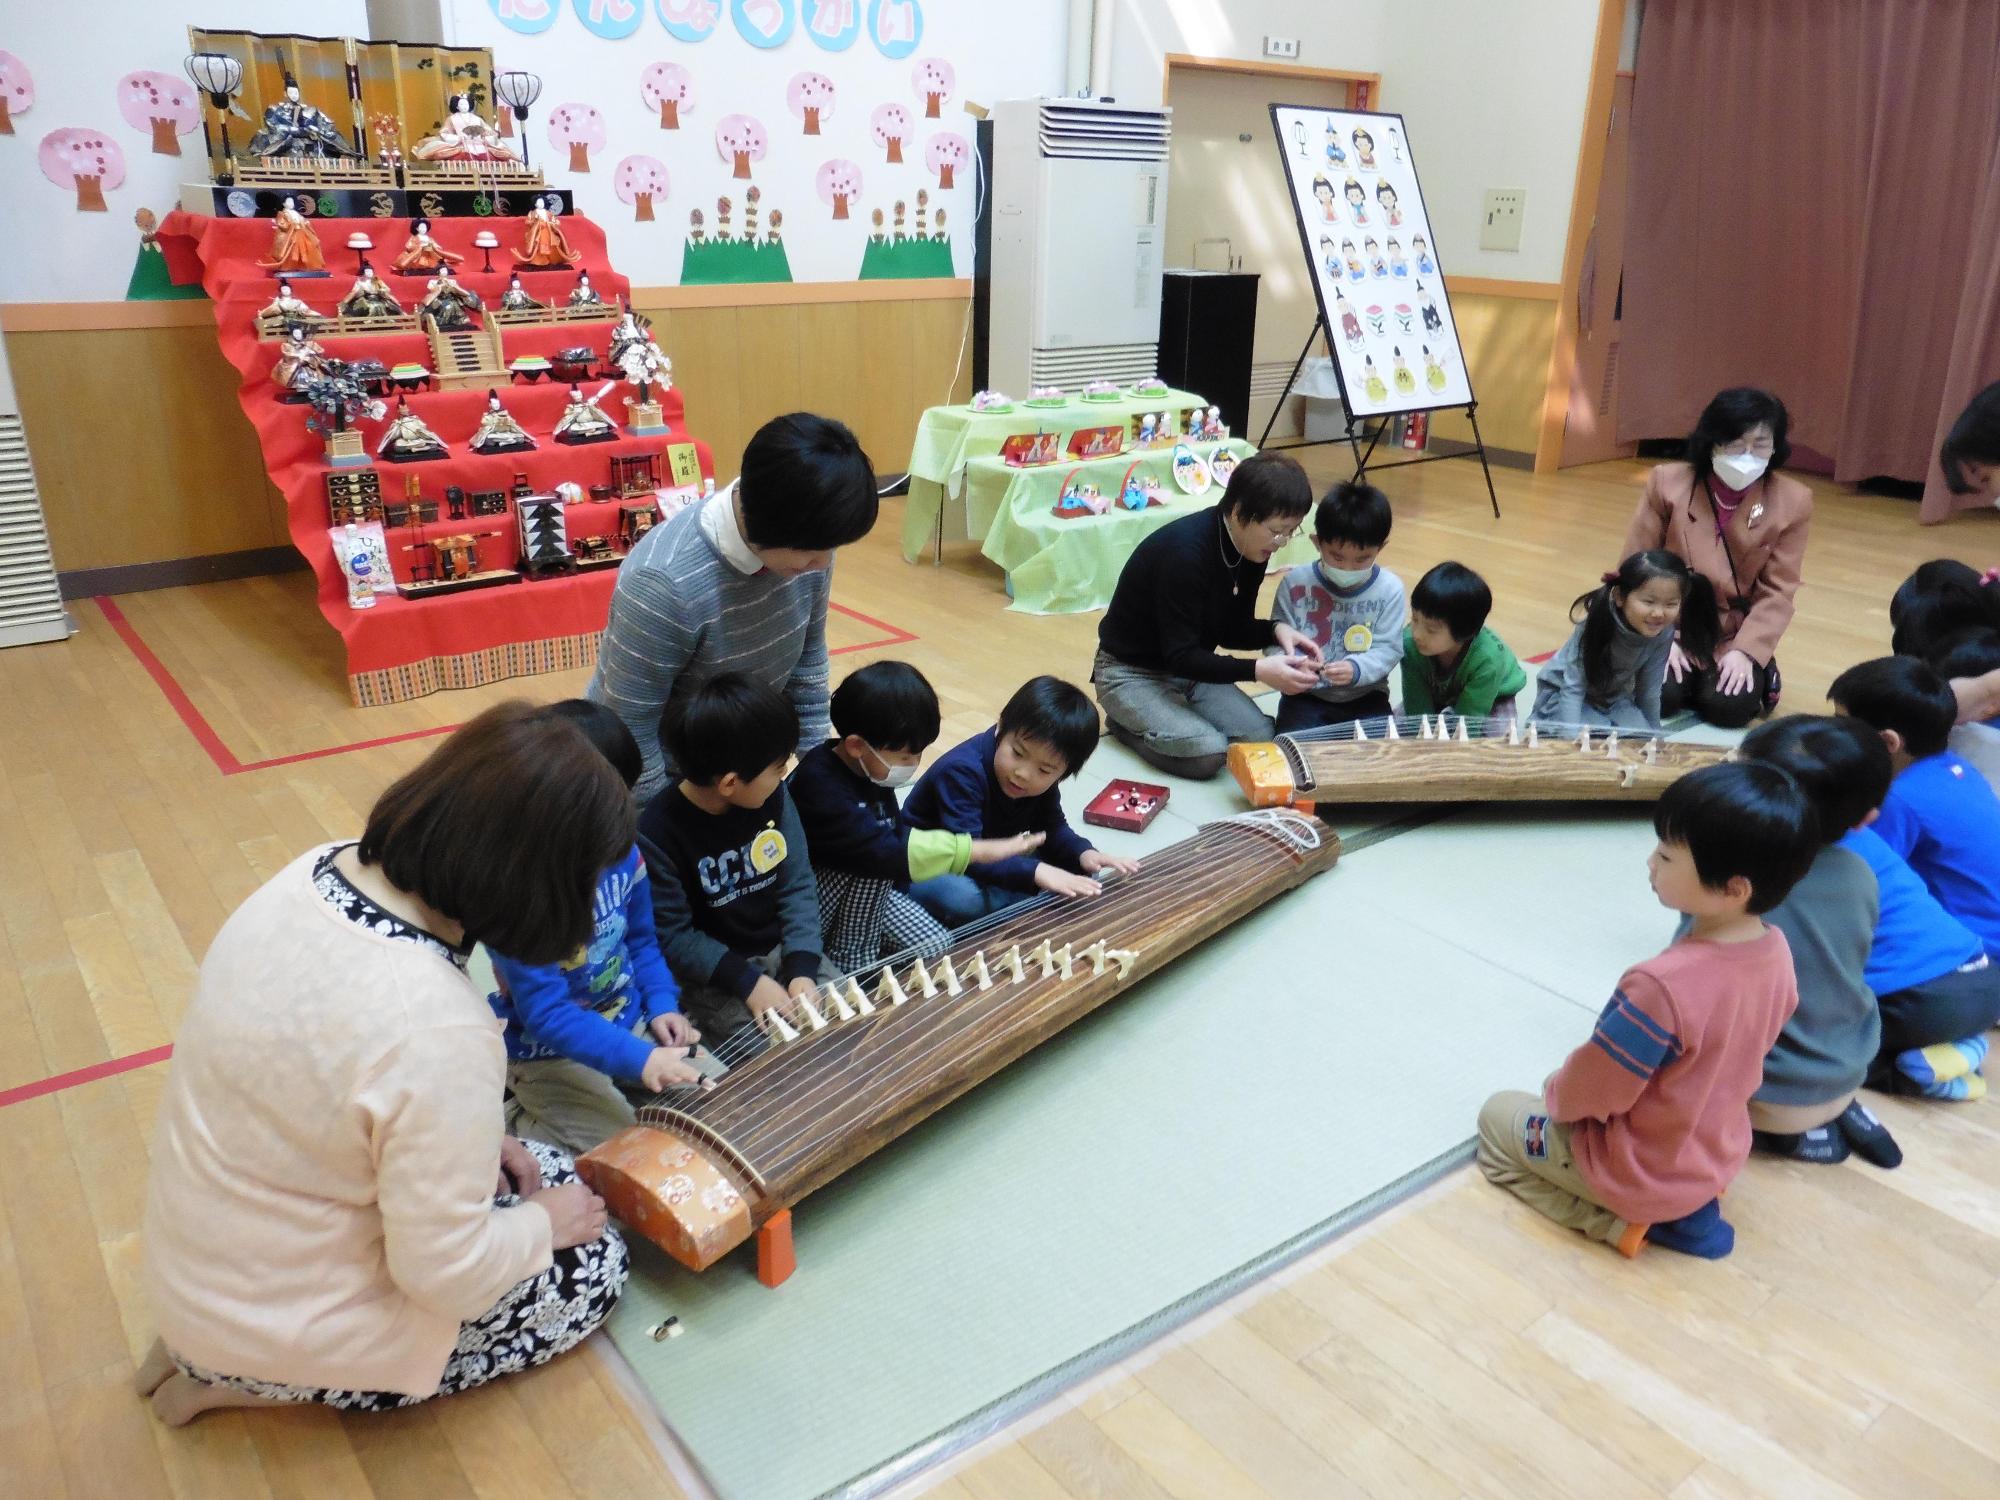 七段飾りのお雛様と琴の演奏を教わっている園児たちの写真